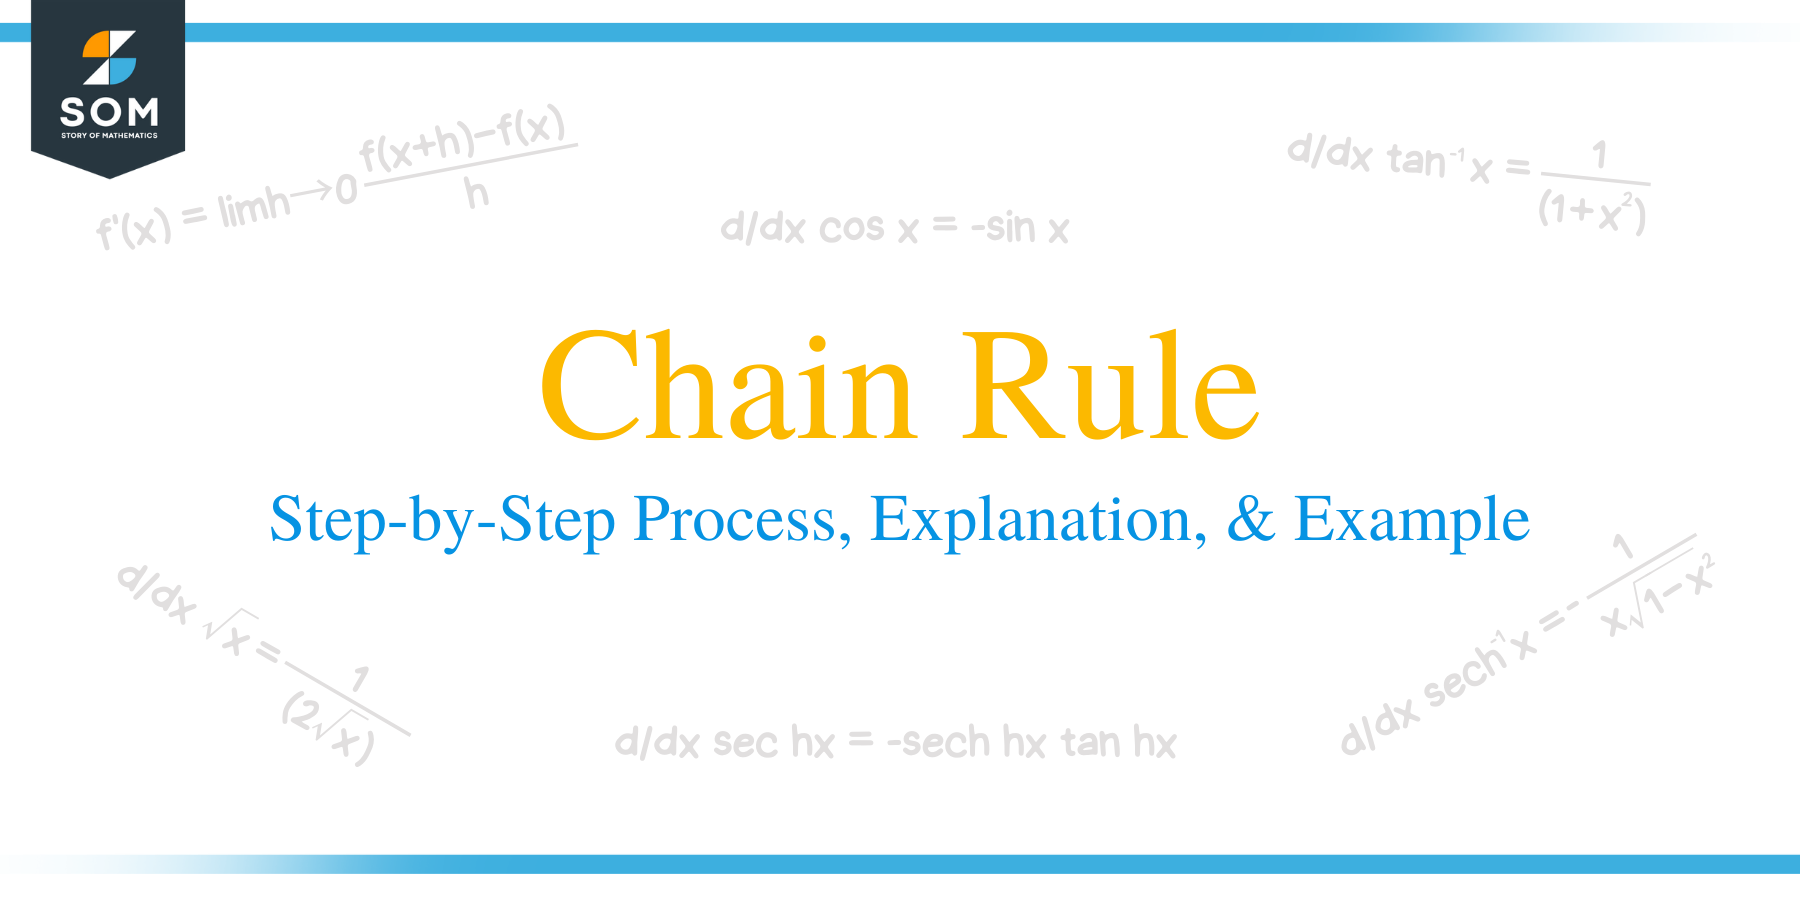 Chain rule